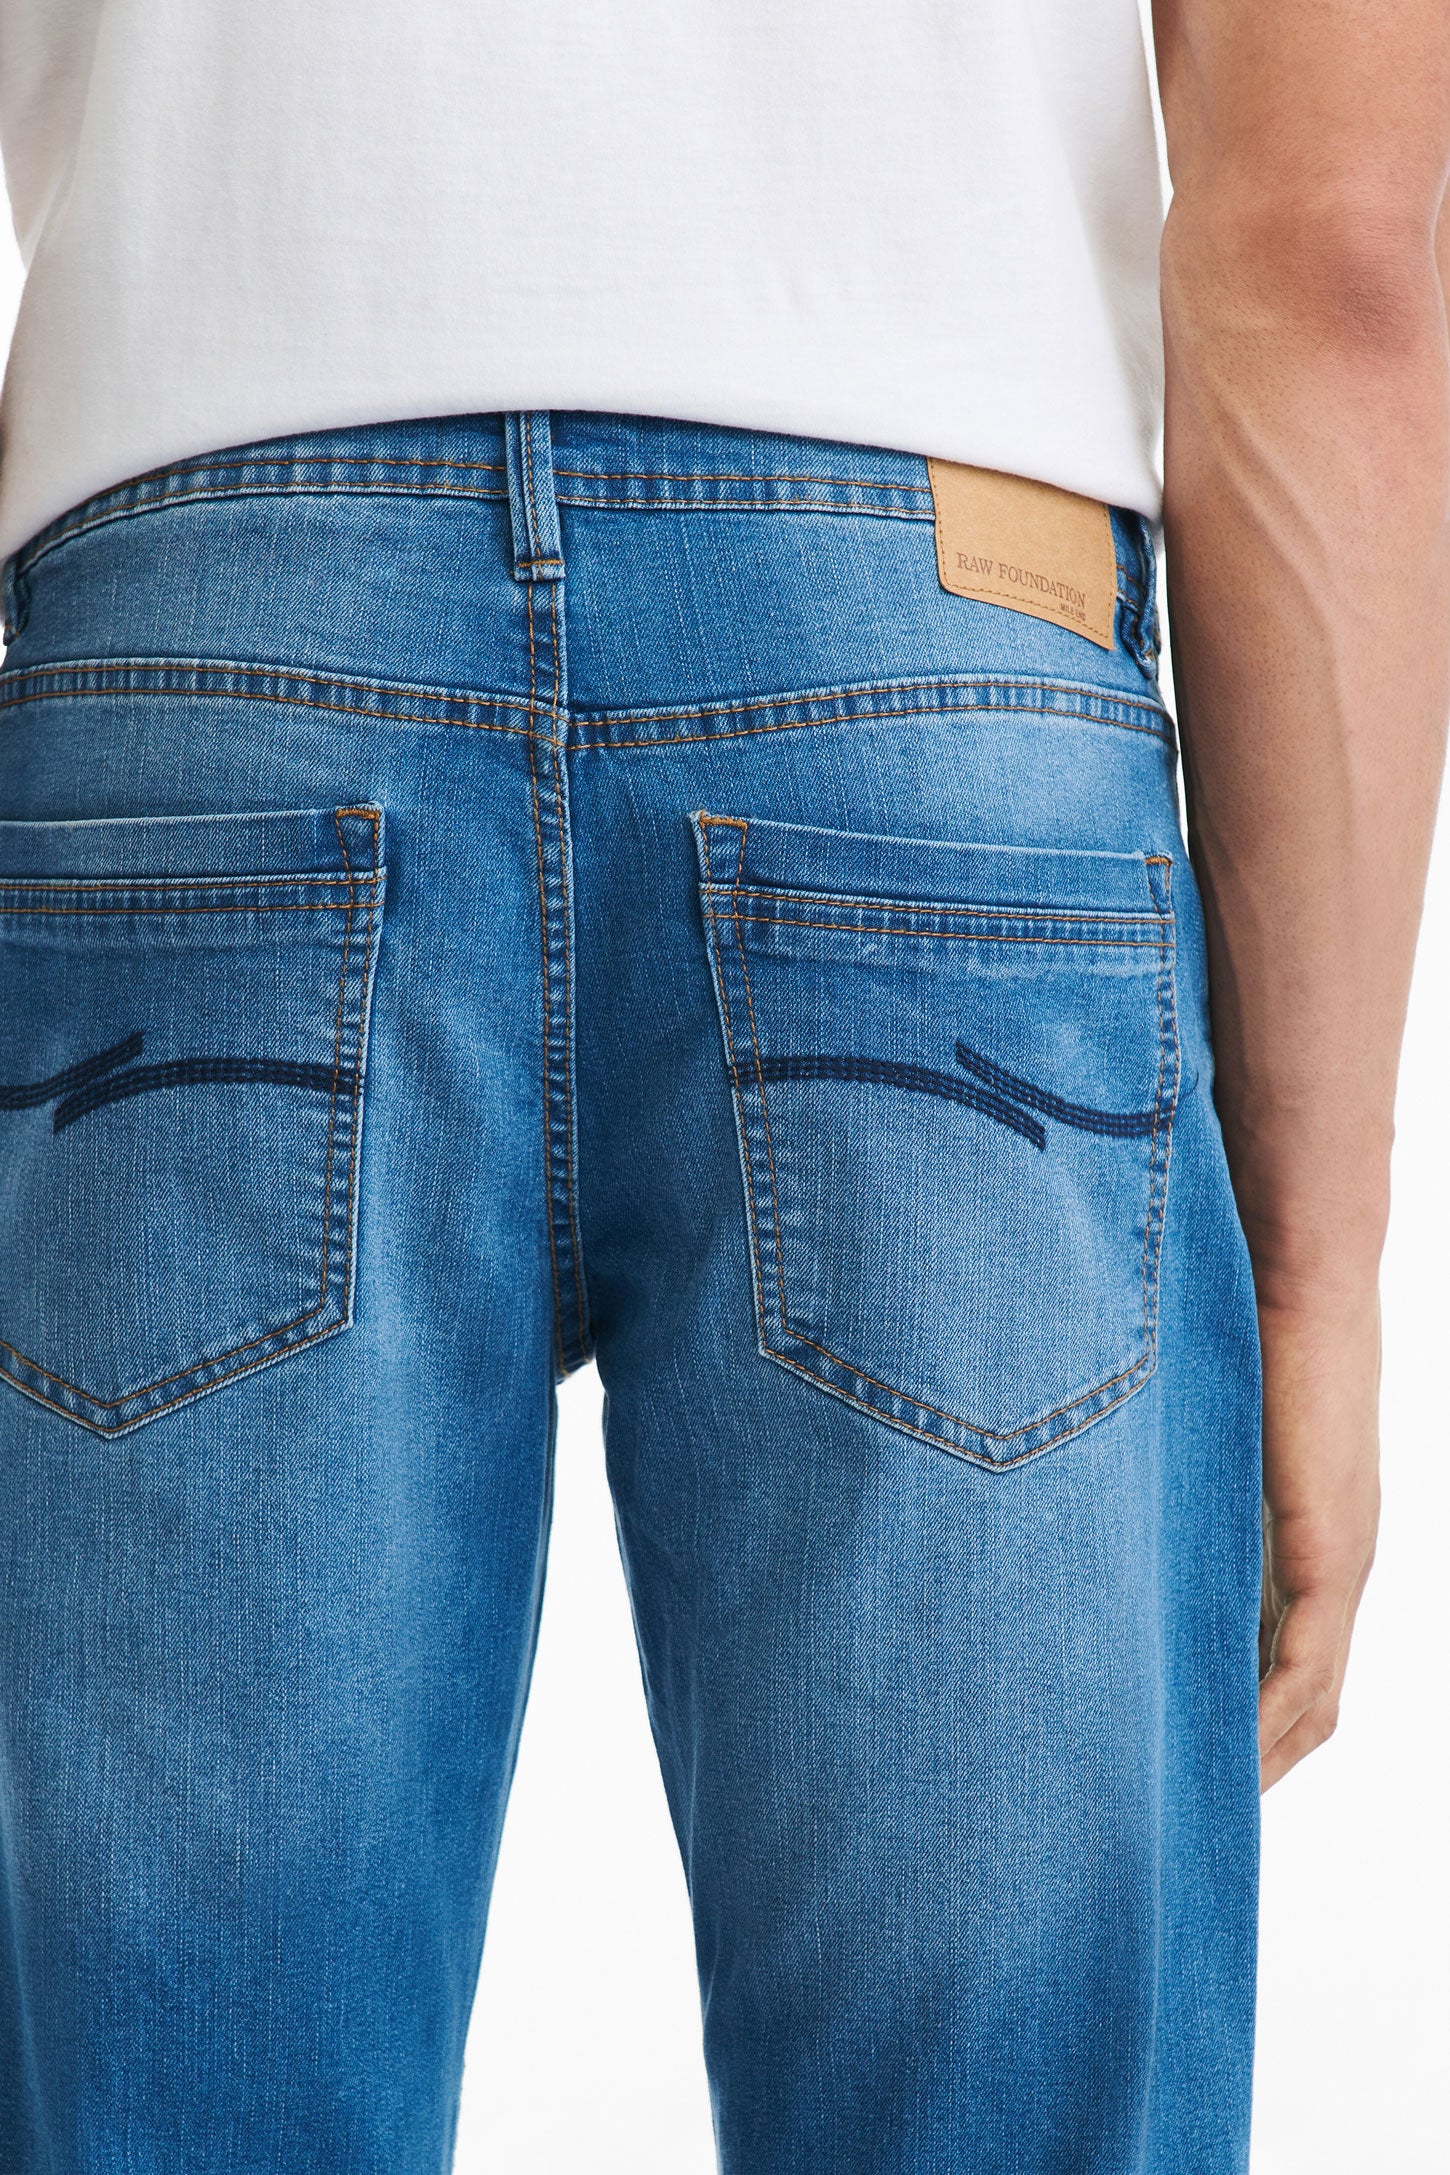 Jeans 5 poches coupe confort 32'' - Homme && INDIGO FONCÉ MOY